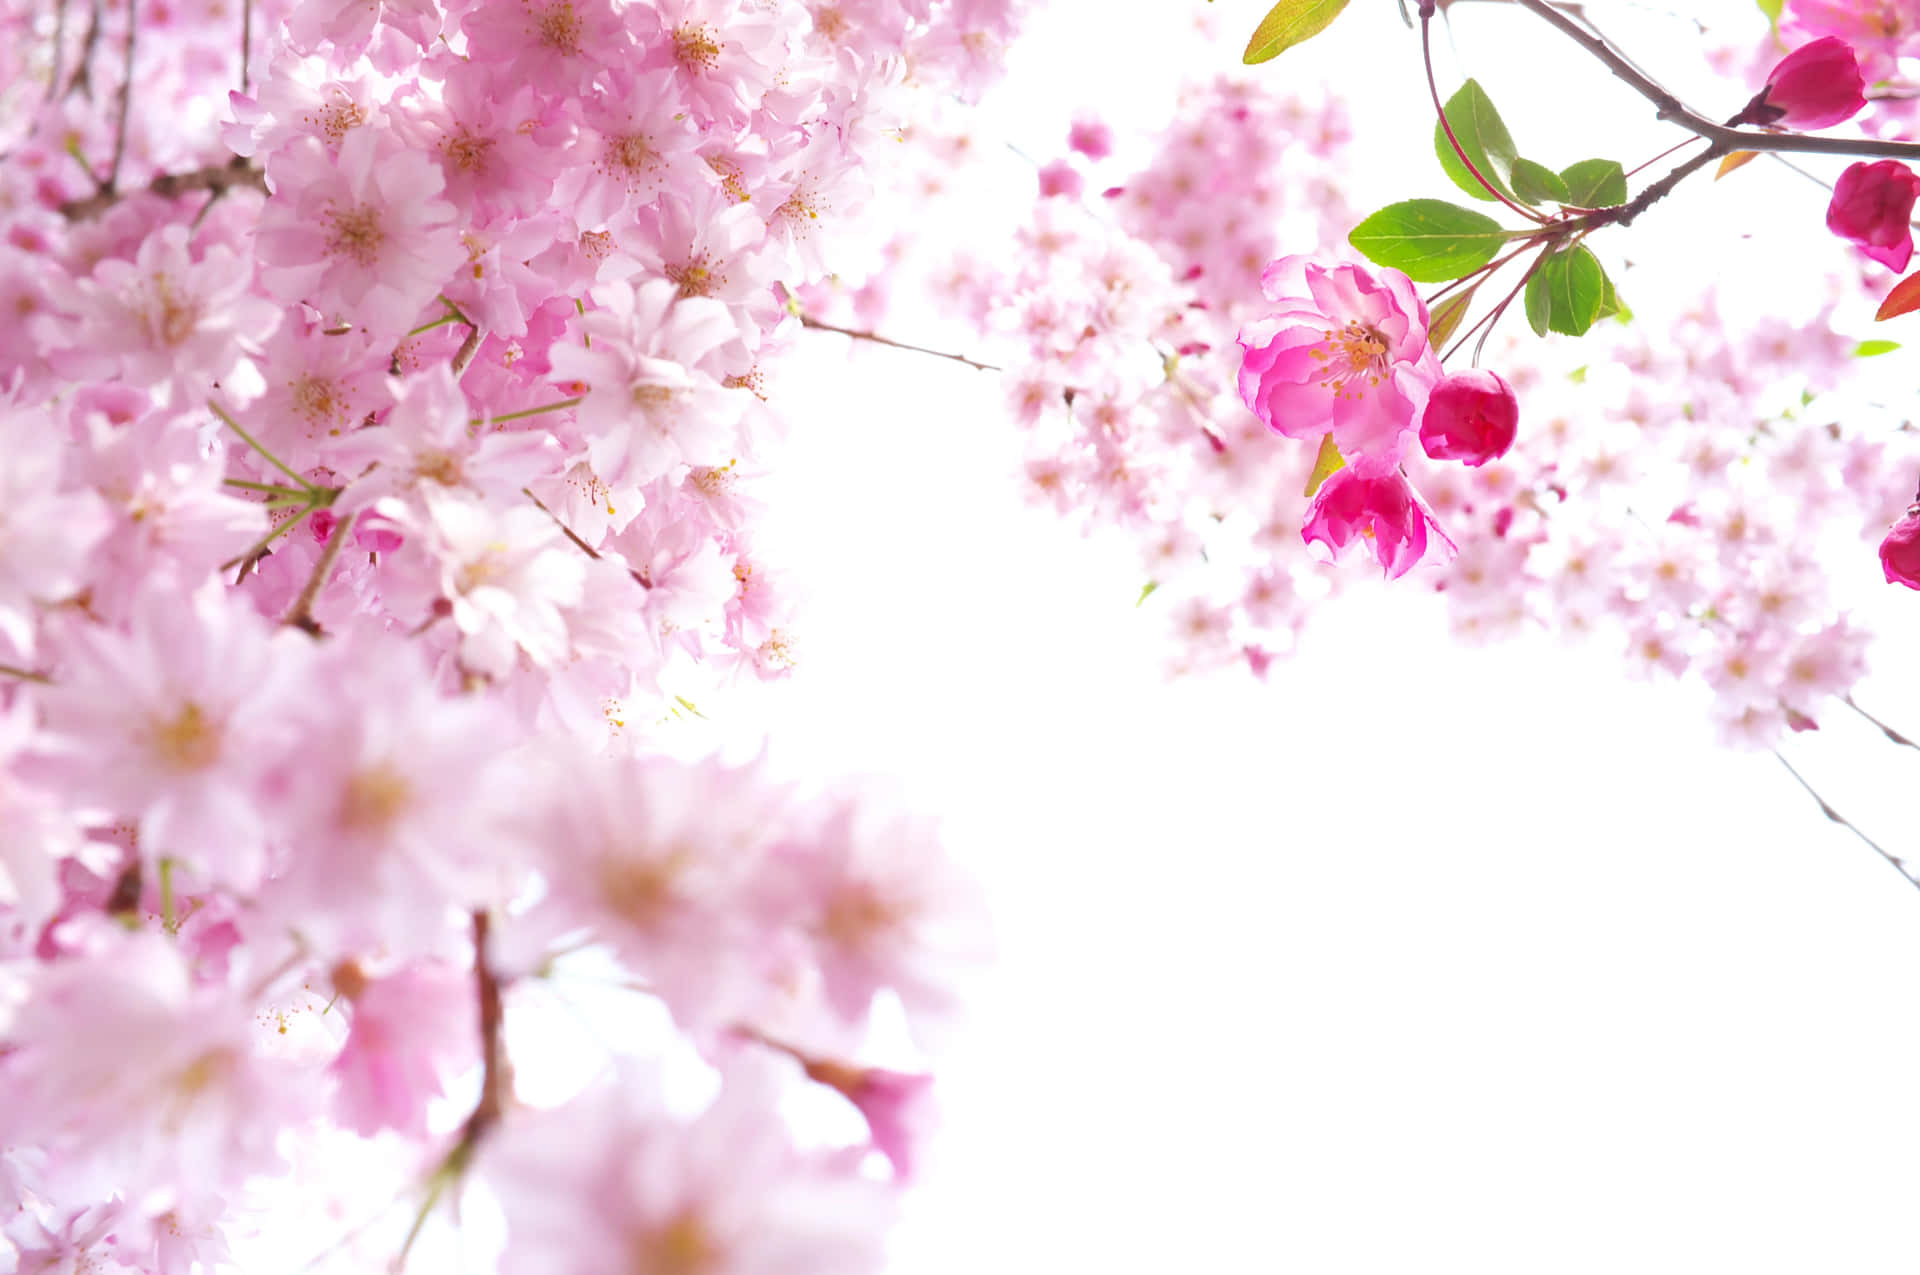 Losárboles De Sakura Florecientes De Japón